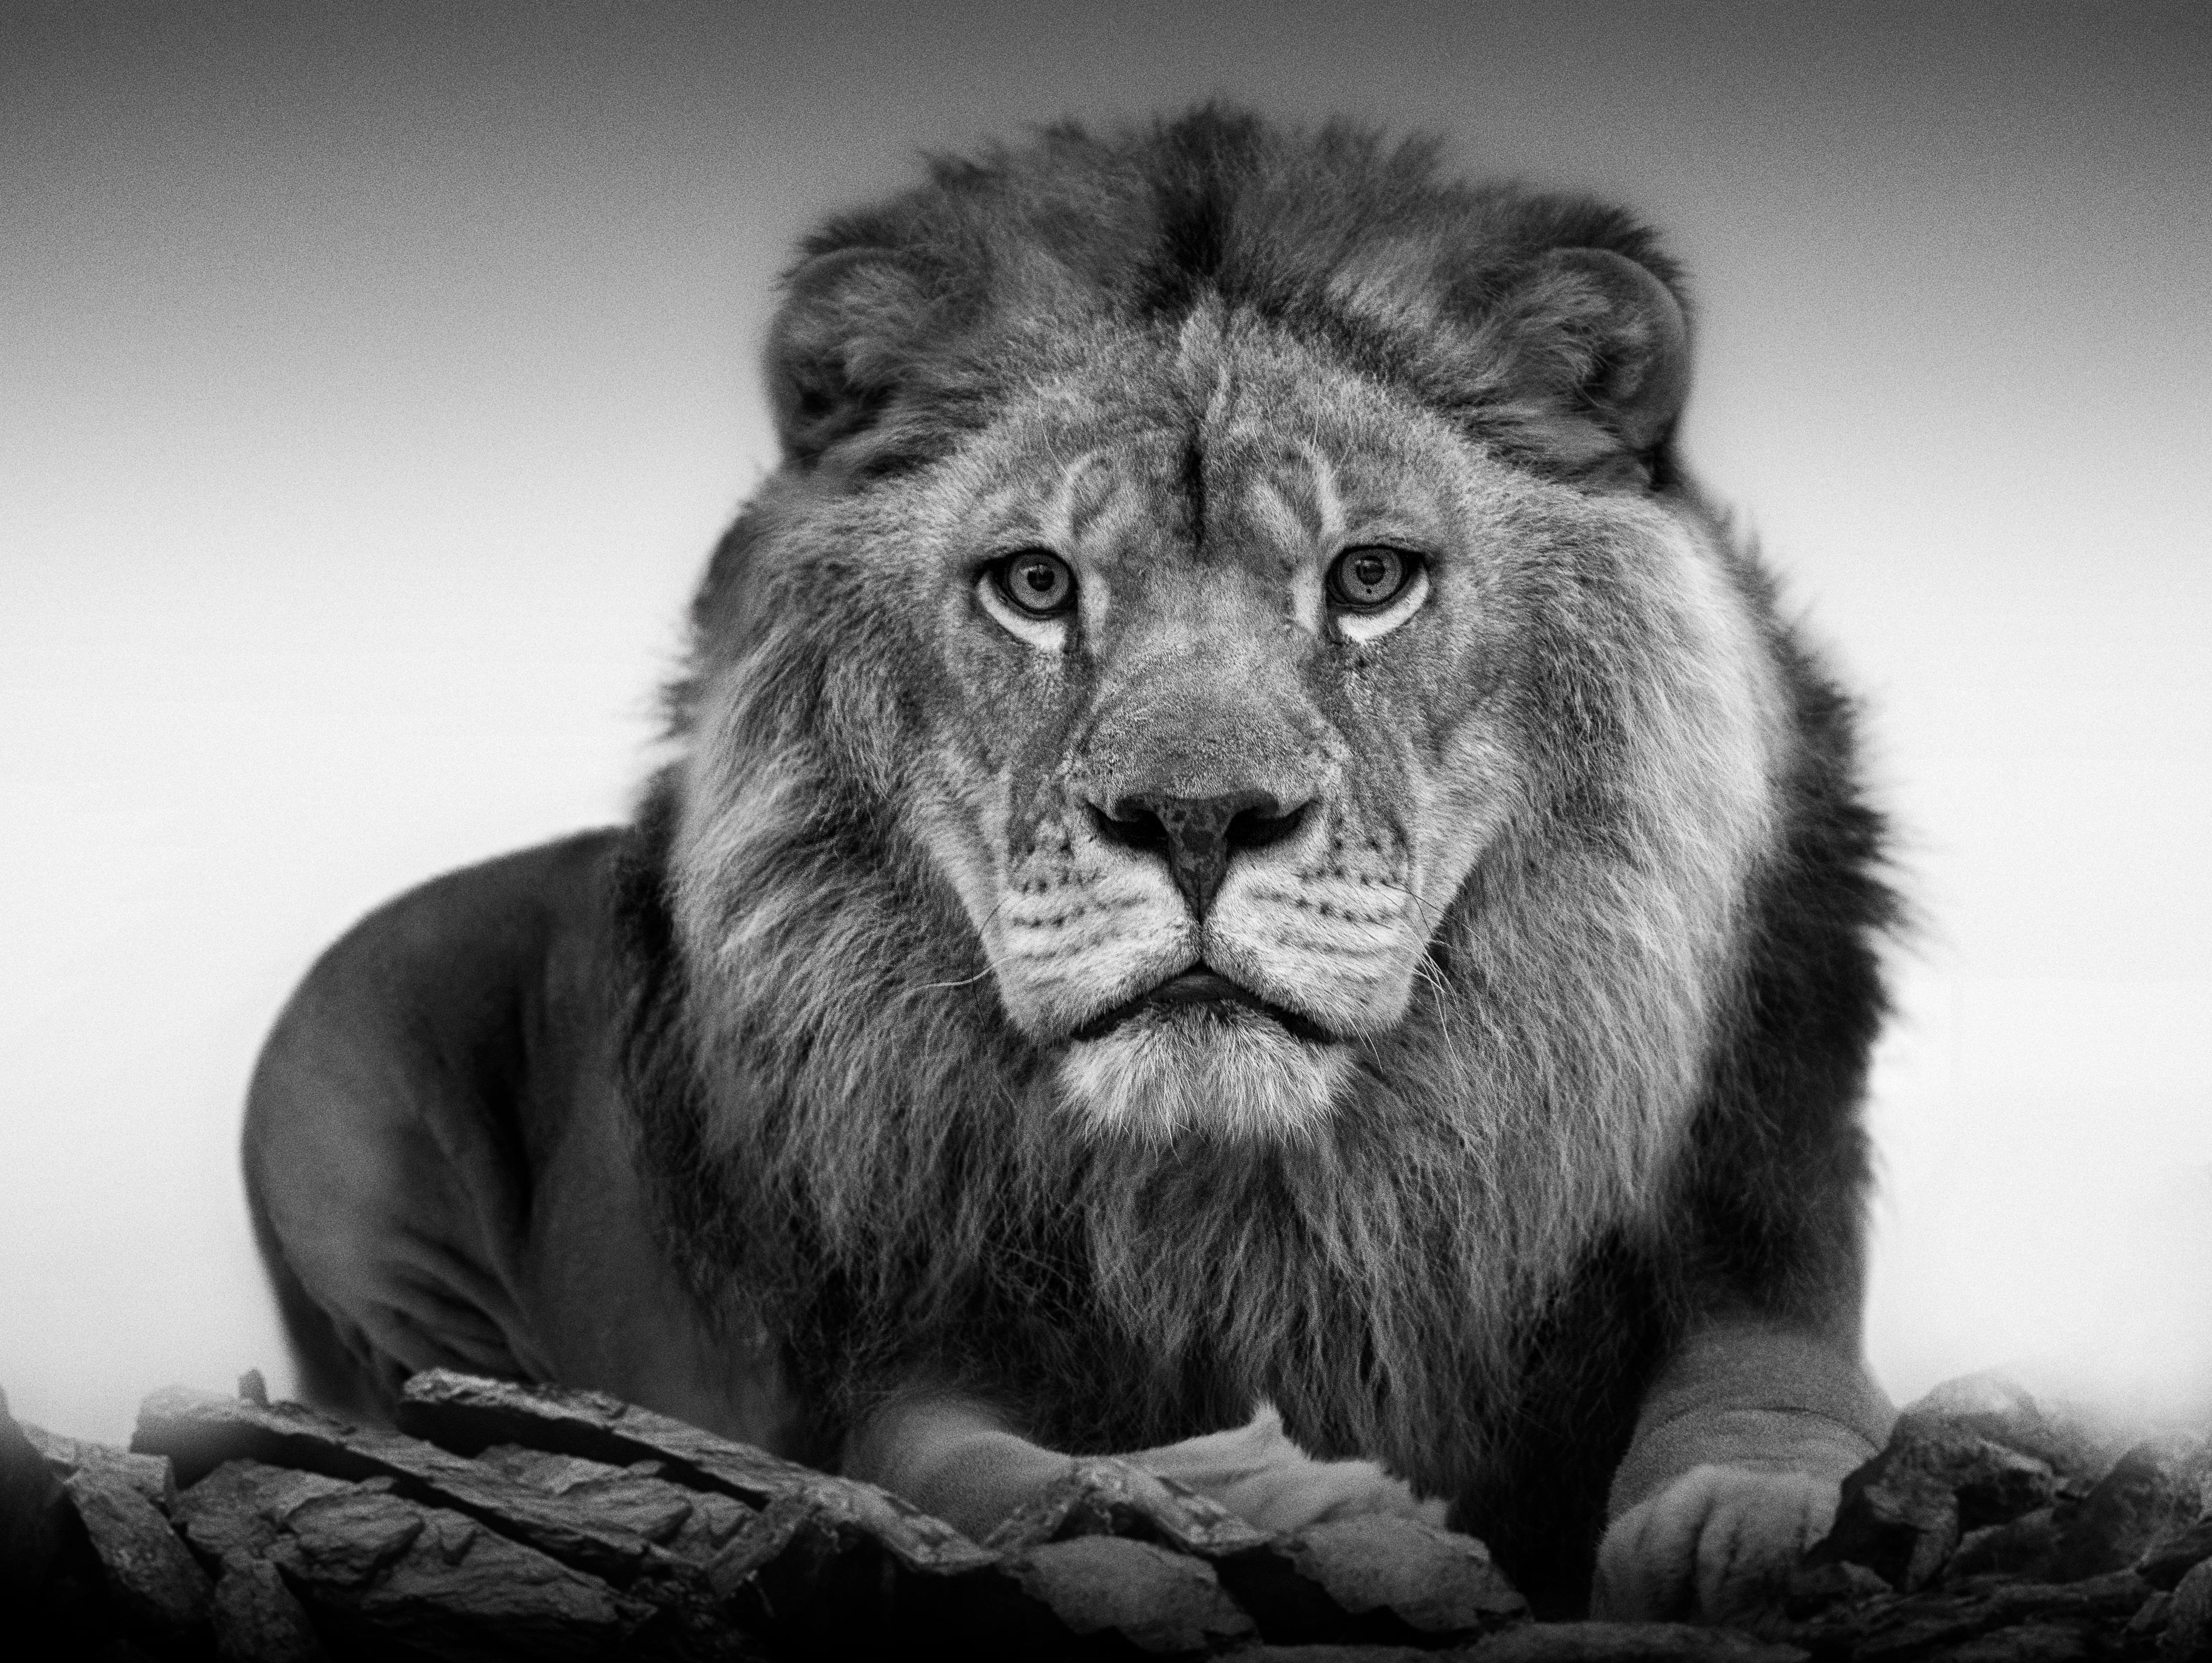 36x48  Lion Portrait, Photograph Fine Art Black and White Lion Photography 